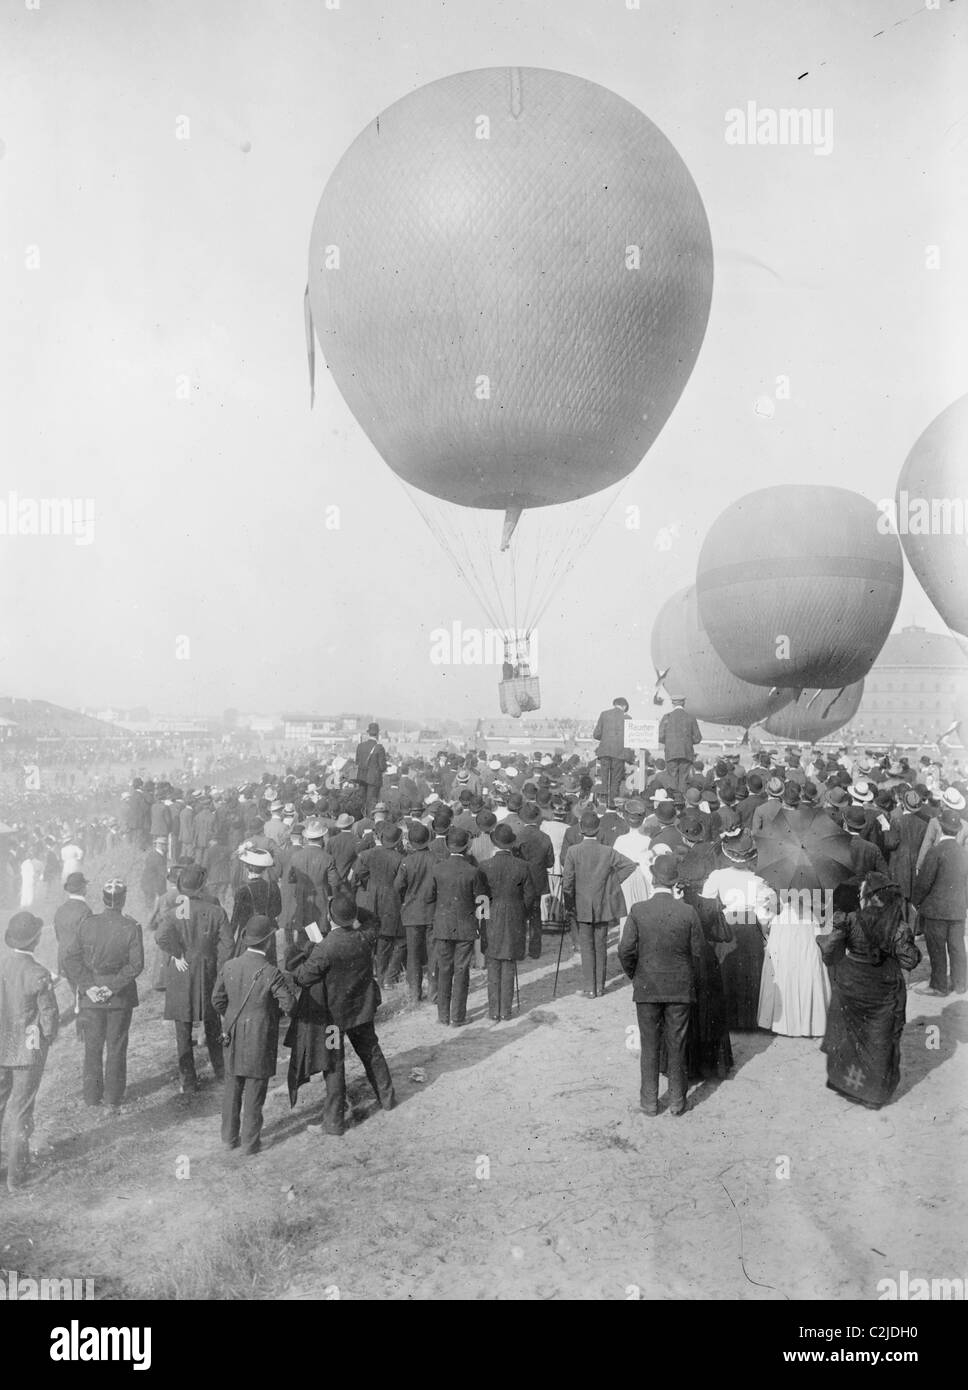 Berlin Balloon Race Stock Photo